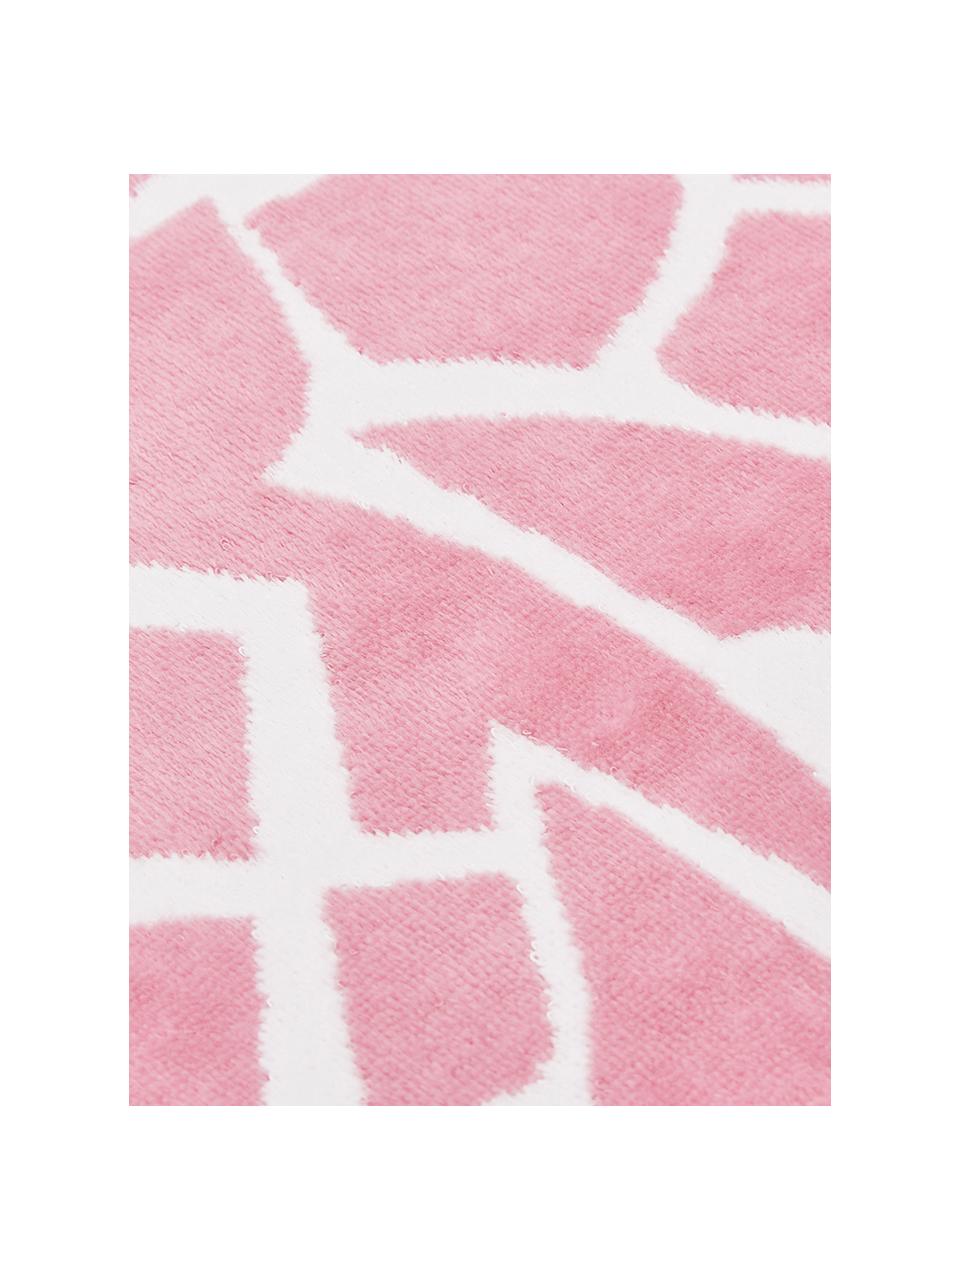 Gestreiftes Strandtuch Asan mit Ananas-Motiv, 100% Baumwolle
leichte Qualität 380 g/m², Pink, Weiss, 80 x 160 cm